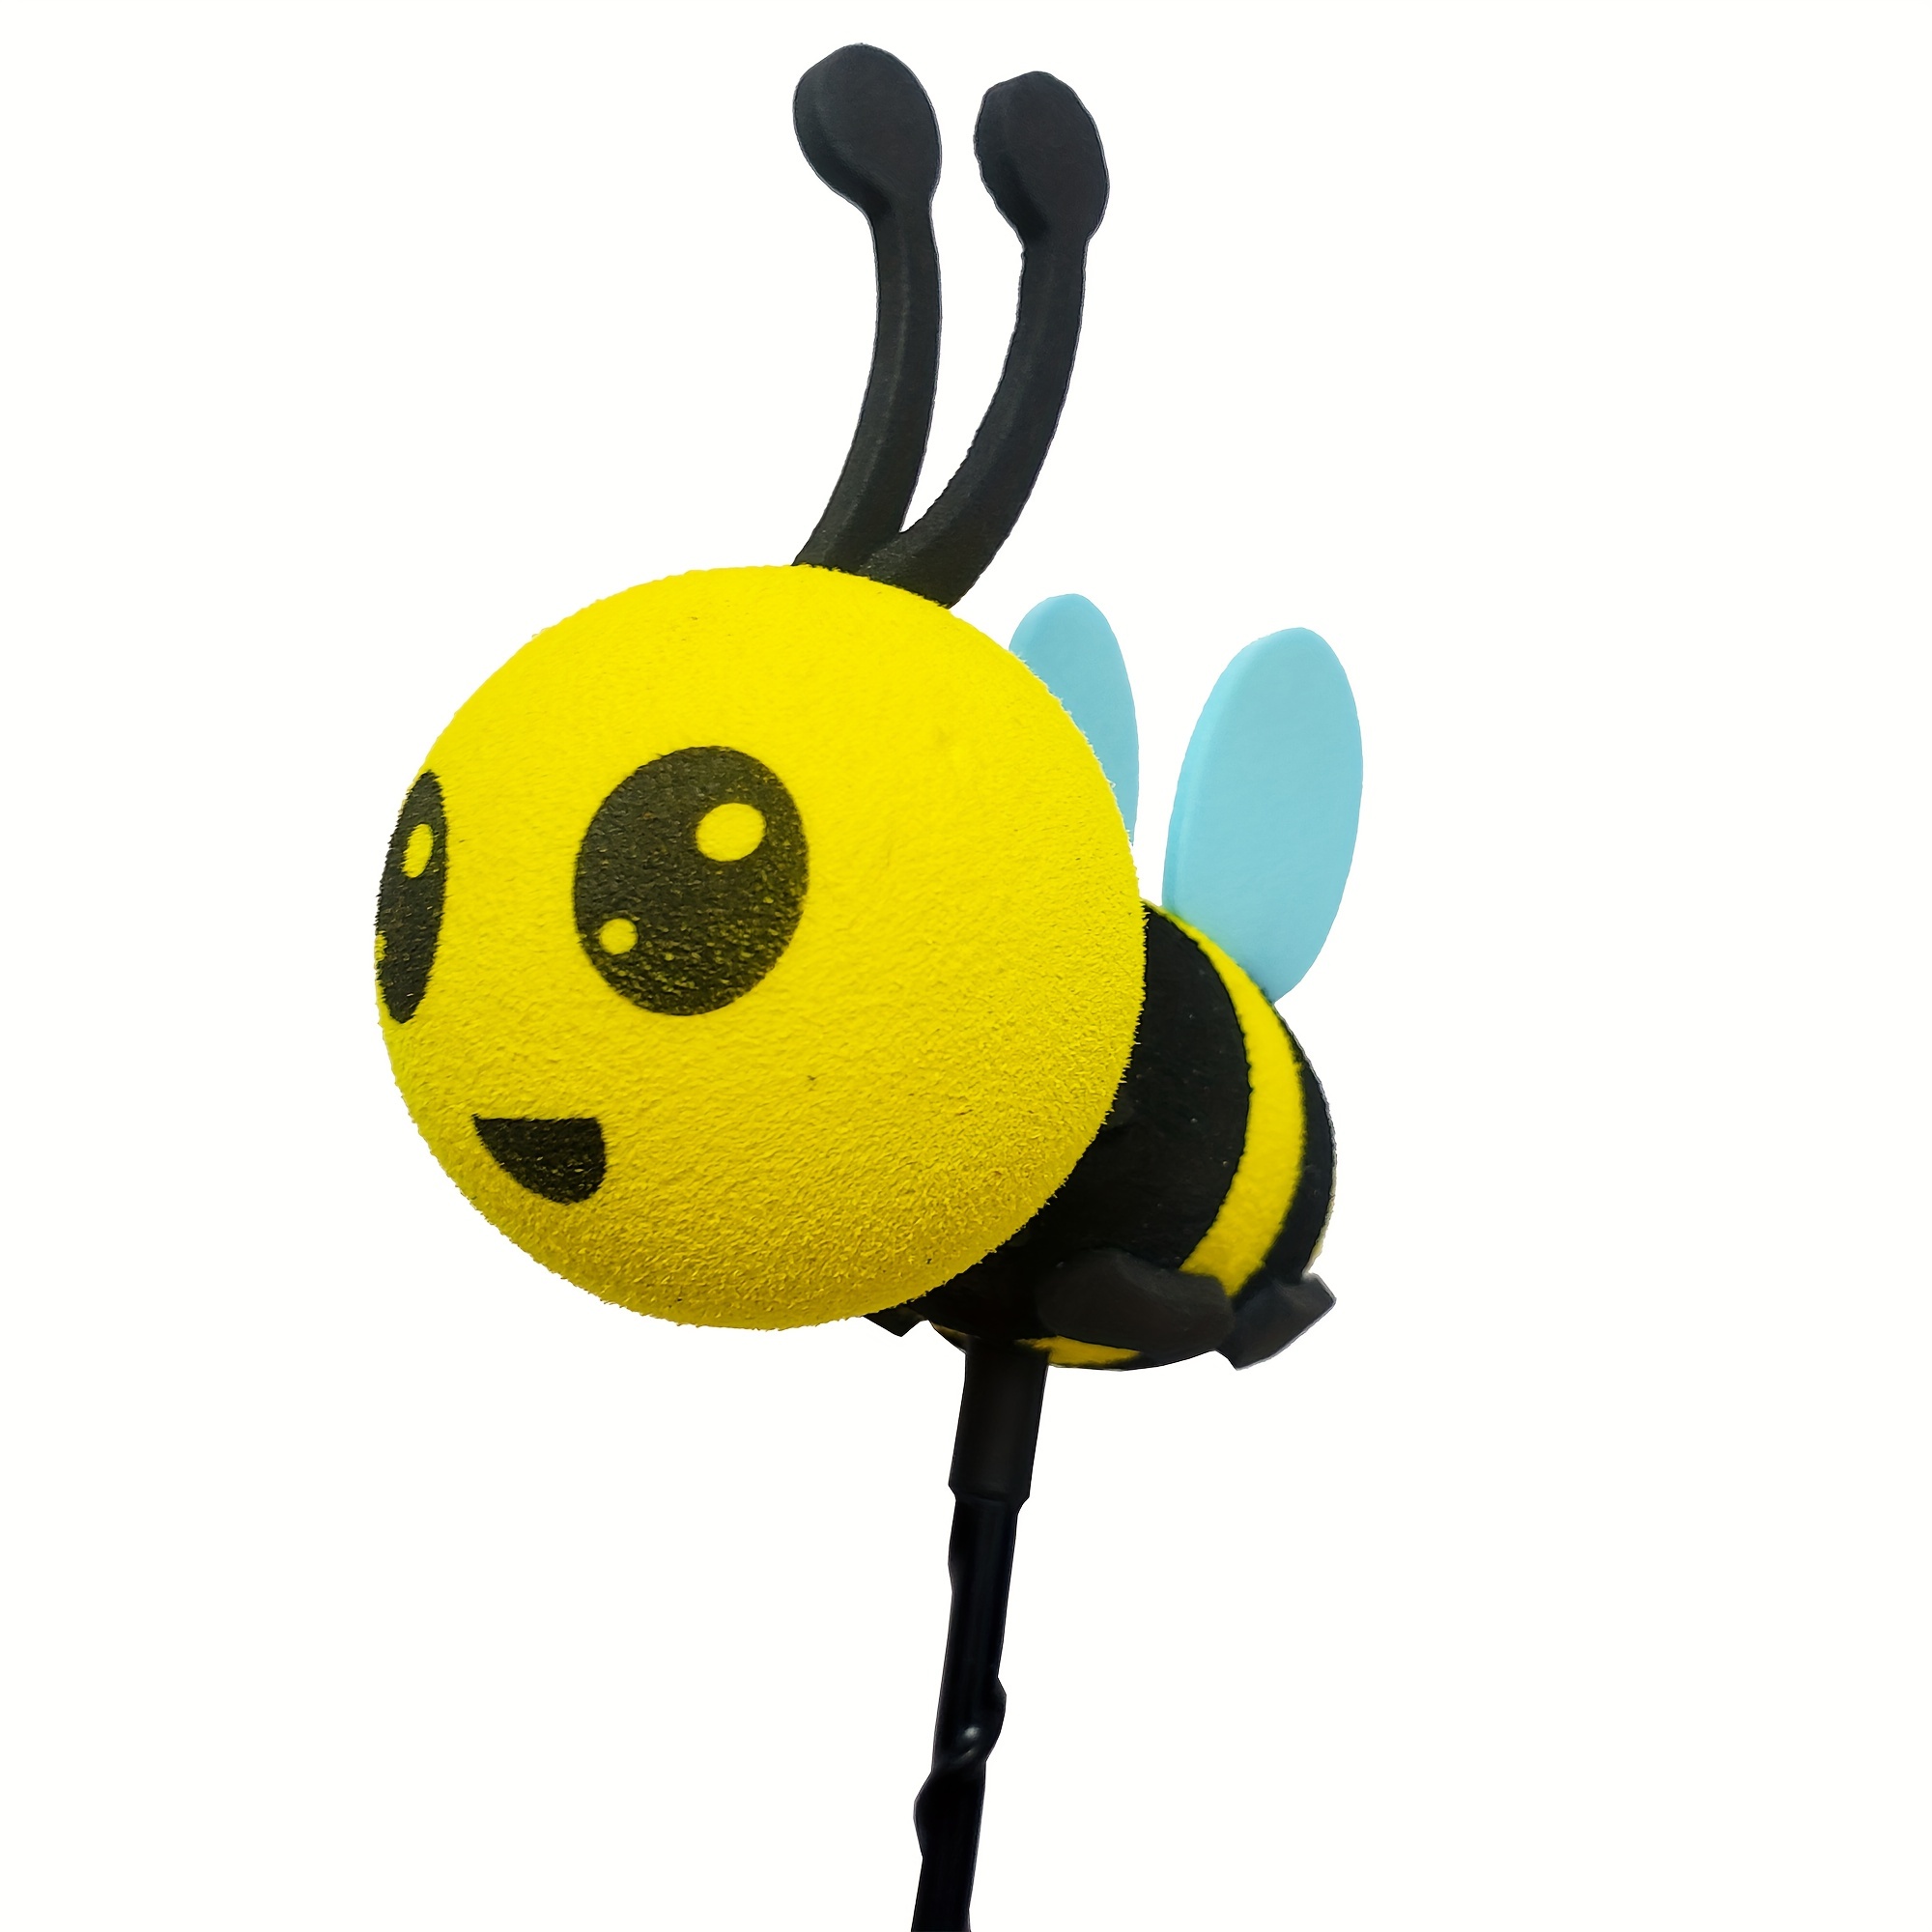 Serre-tête antennes abeille jaune et noir - Accessoire cheveux